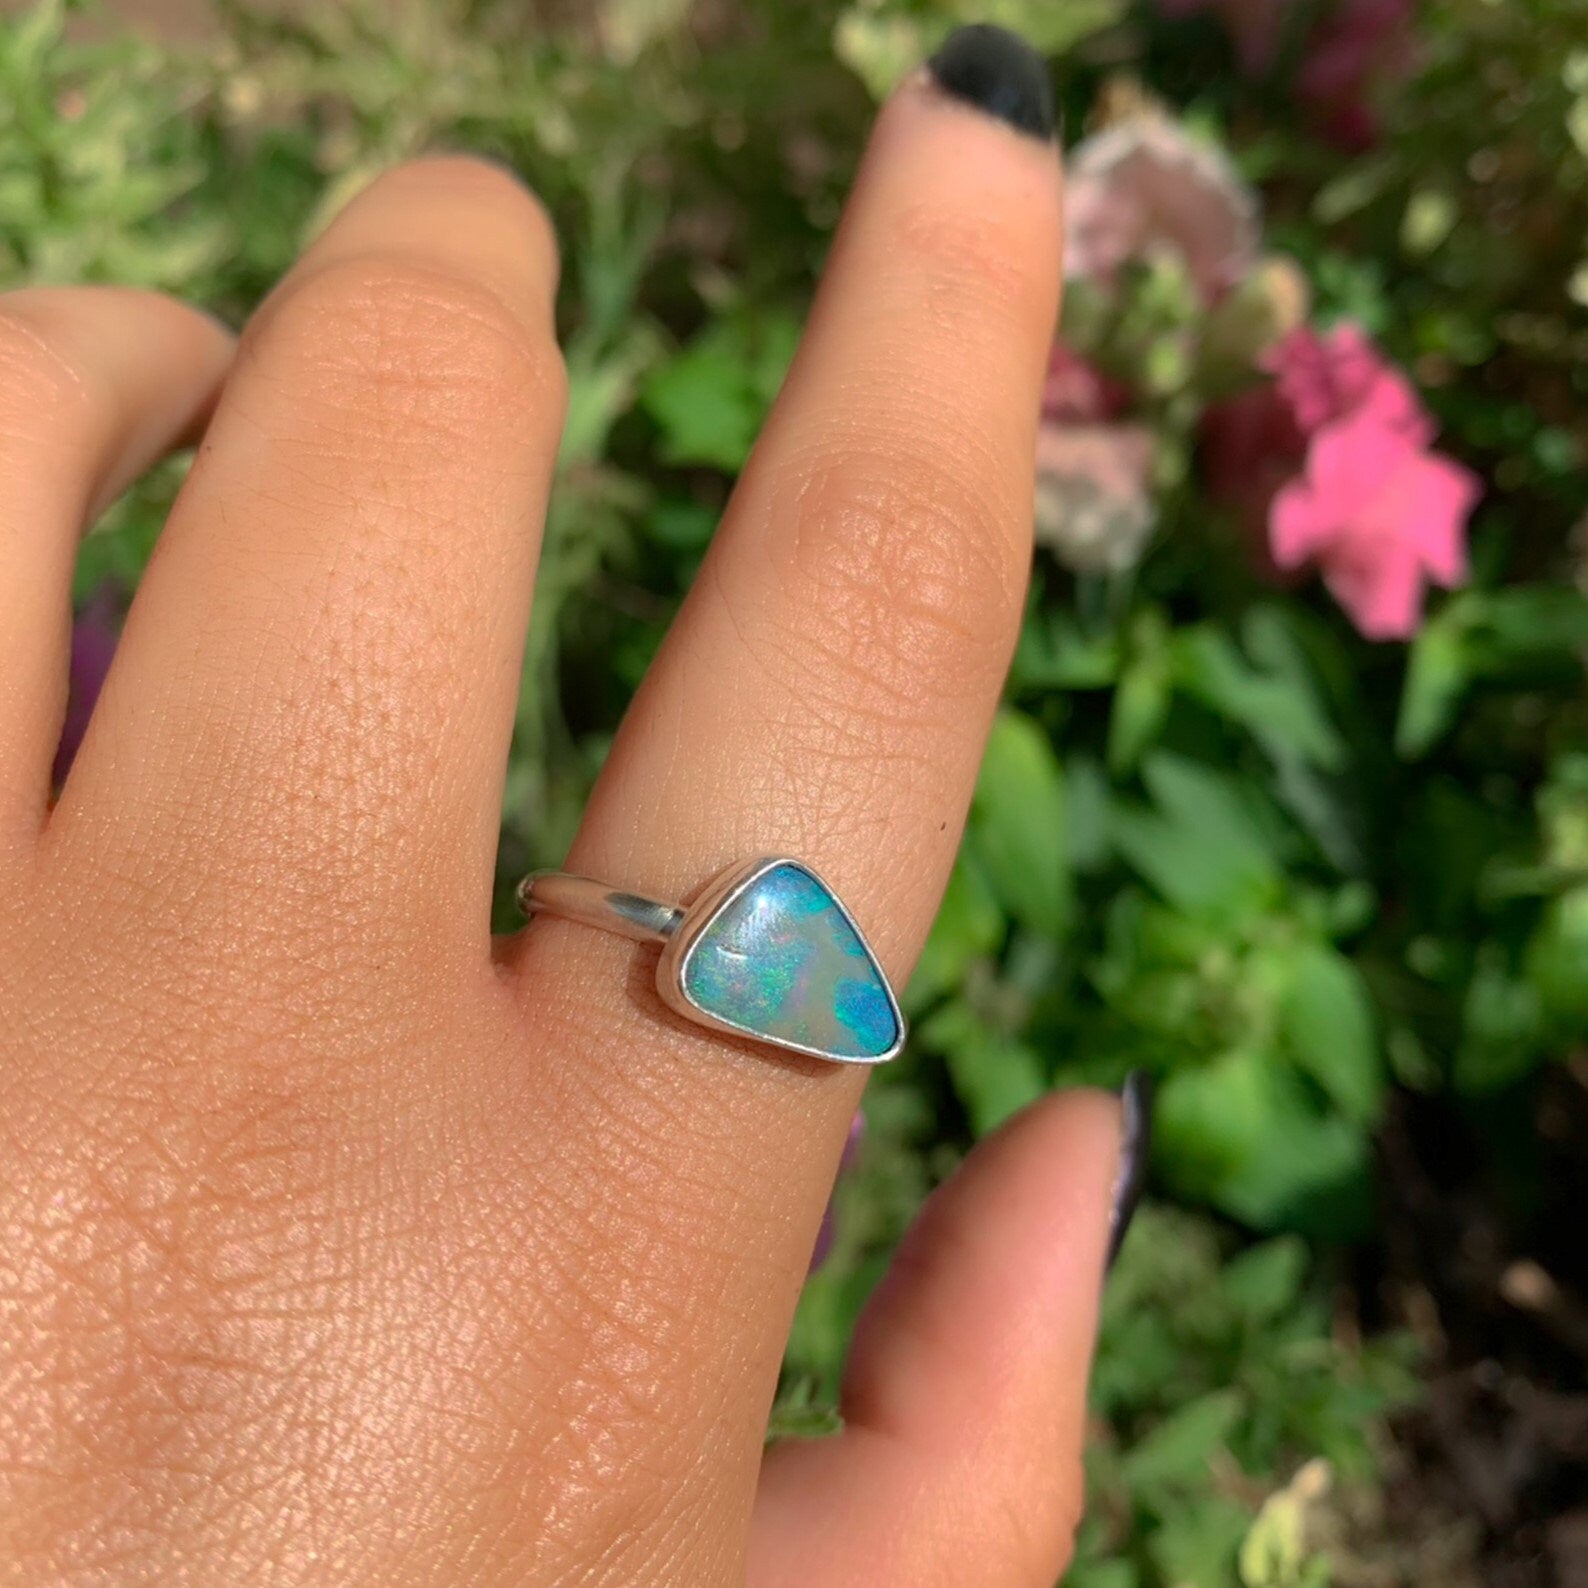 Australian Boulder Opal Ring - Size 10 1/4 - Sterling Silver - Lightning Ridge Opal Ring, Dainty Opal Jewelry, Solid Australian Opal Jewelry